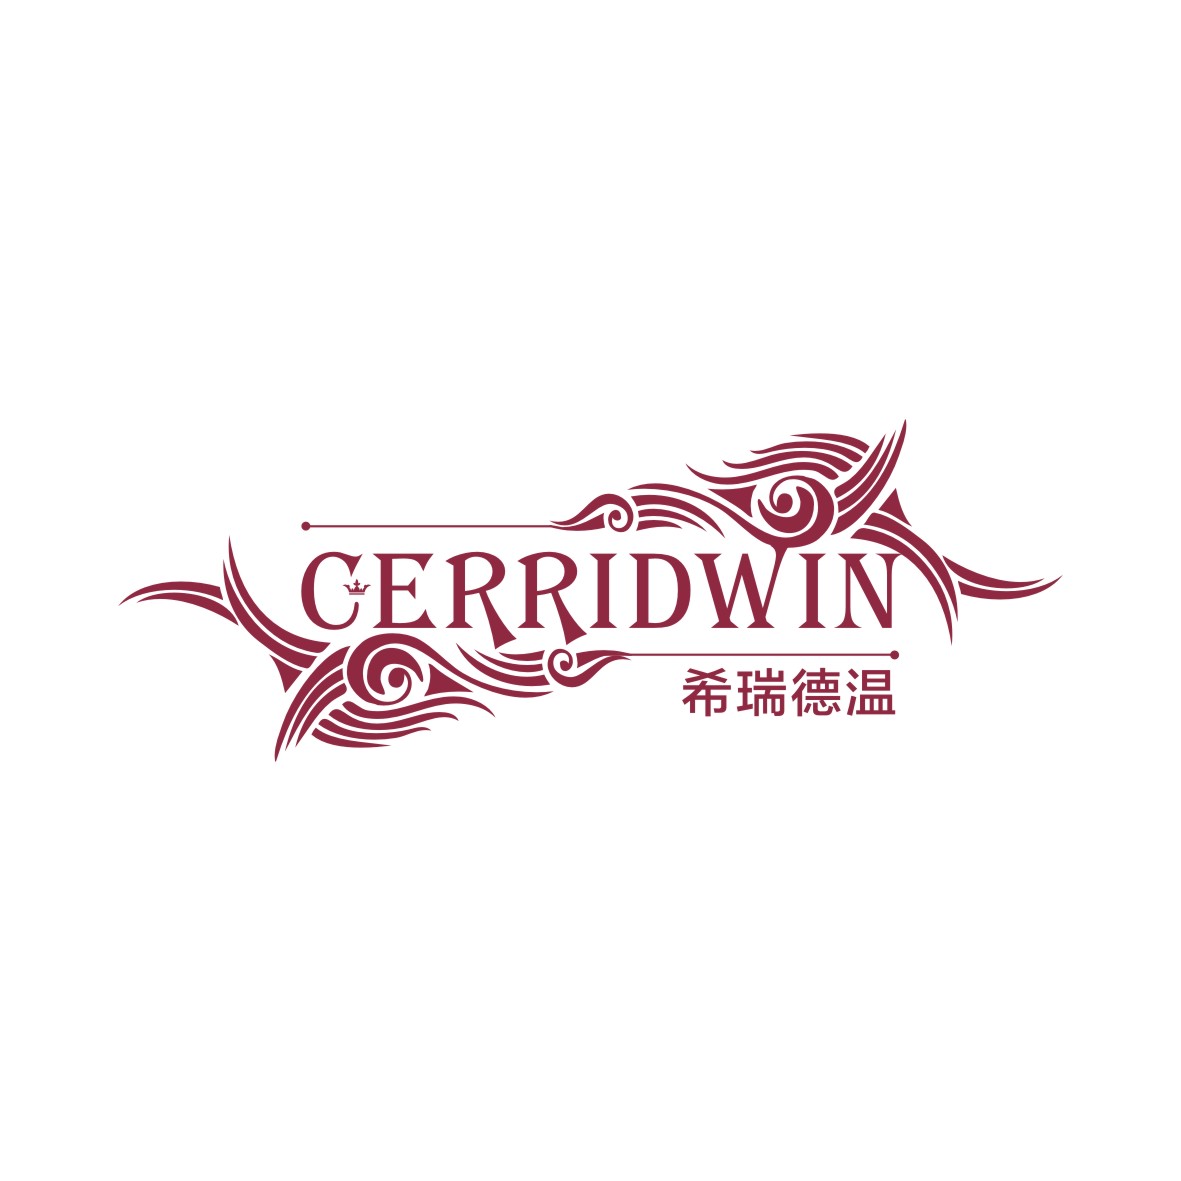 广州品翰文化发展有限公司商标希瑞德温 CERRIDWIN（33类）商标转让流程及费用